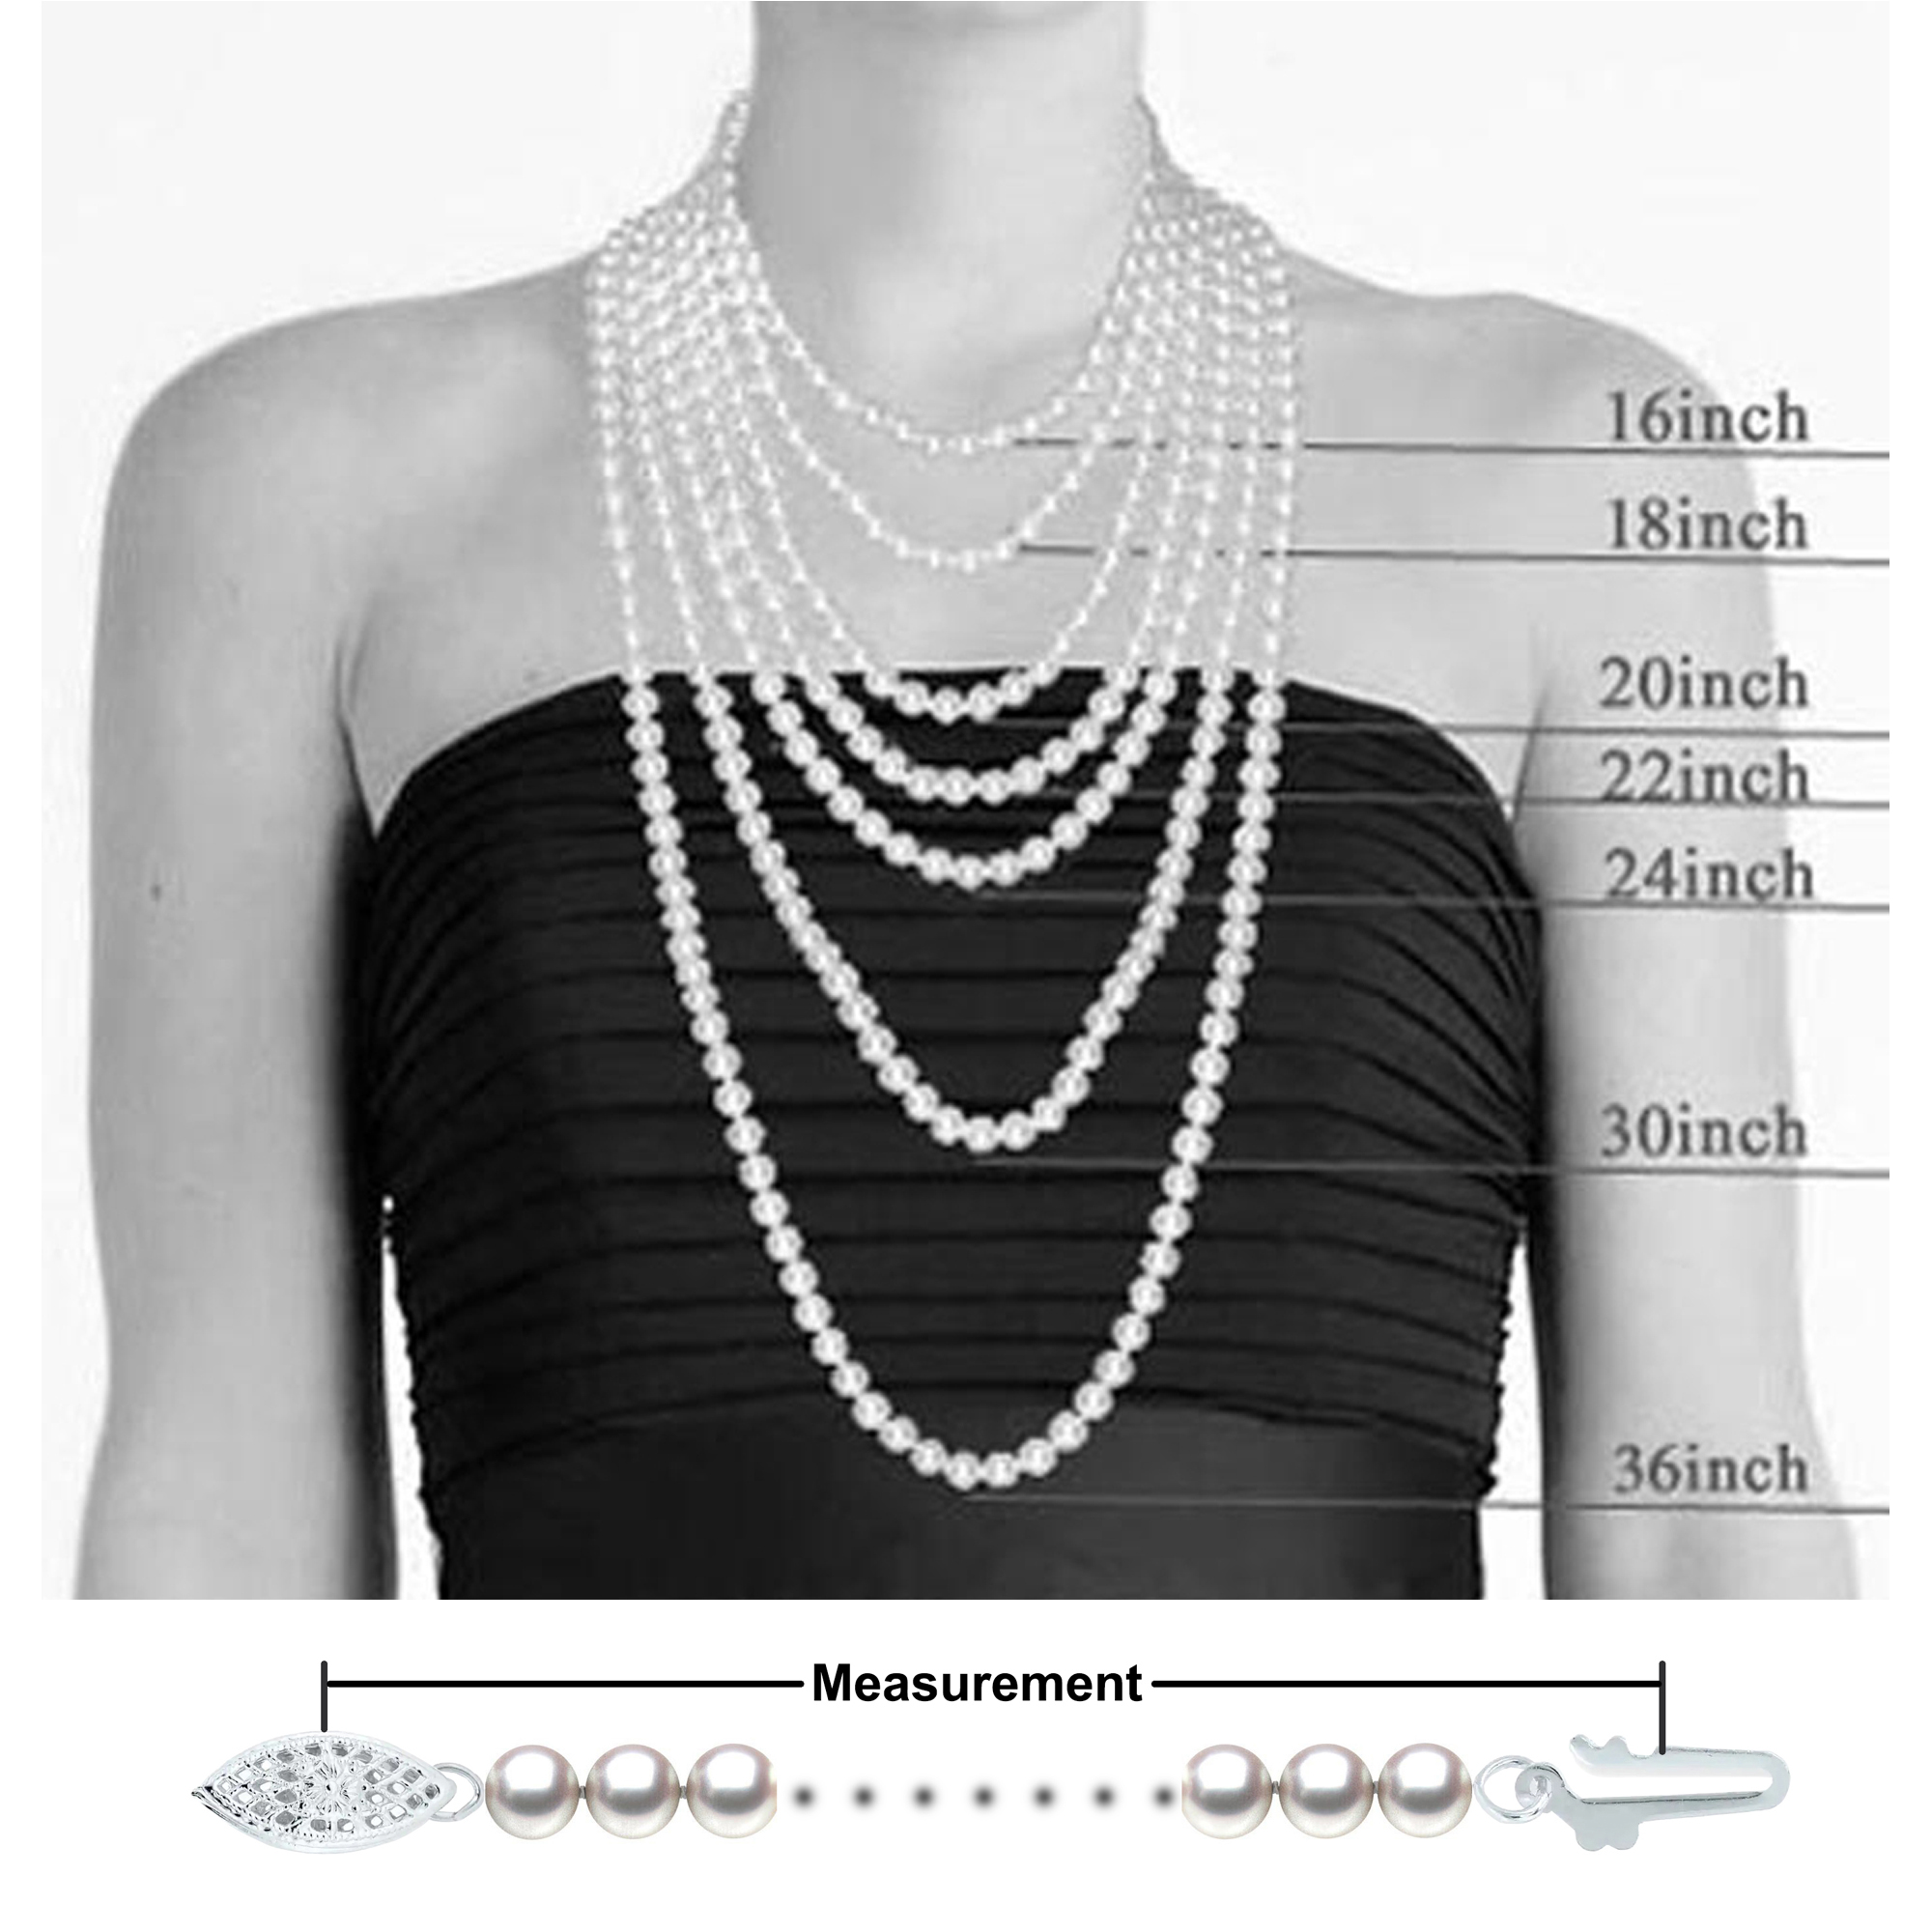 Orien Jewelry AA Pink Freshwater Pearl Necklace 5-10mm Pearl Pendant Necklace 16-22 Inch Pearl Necklace Pendant for Women 